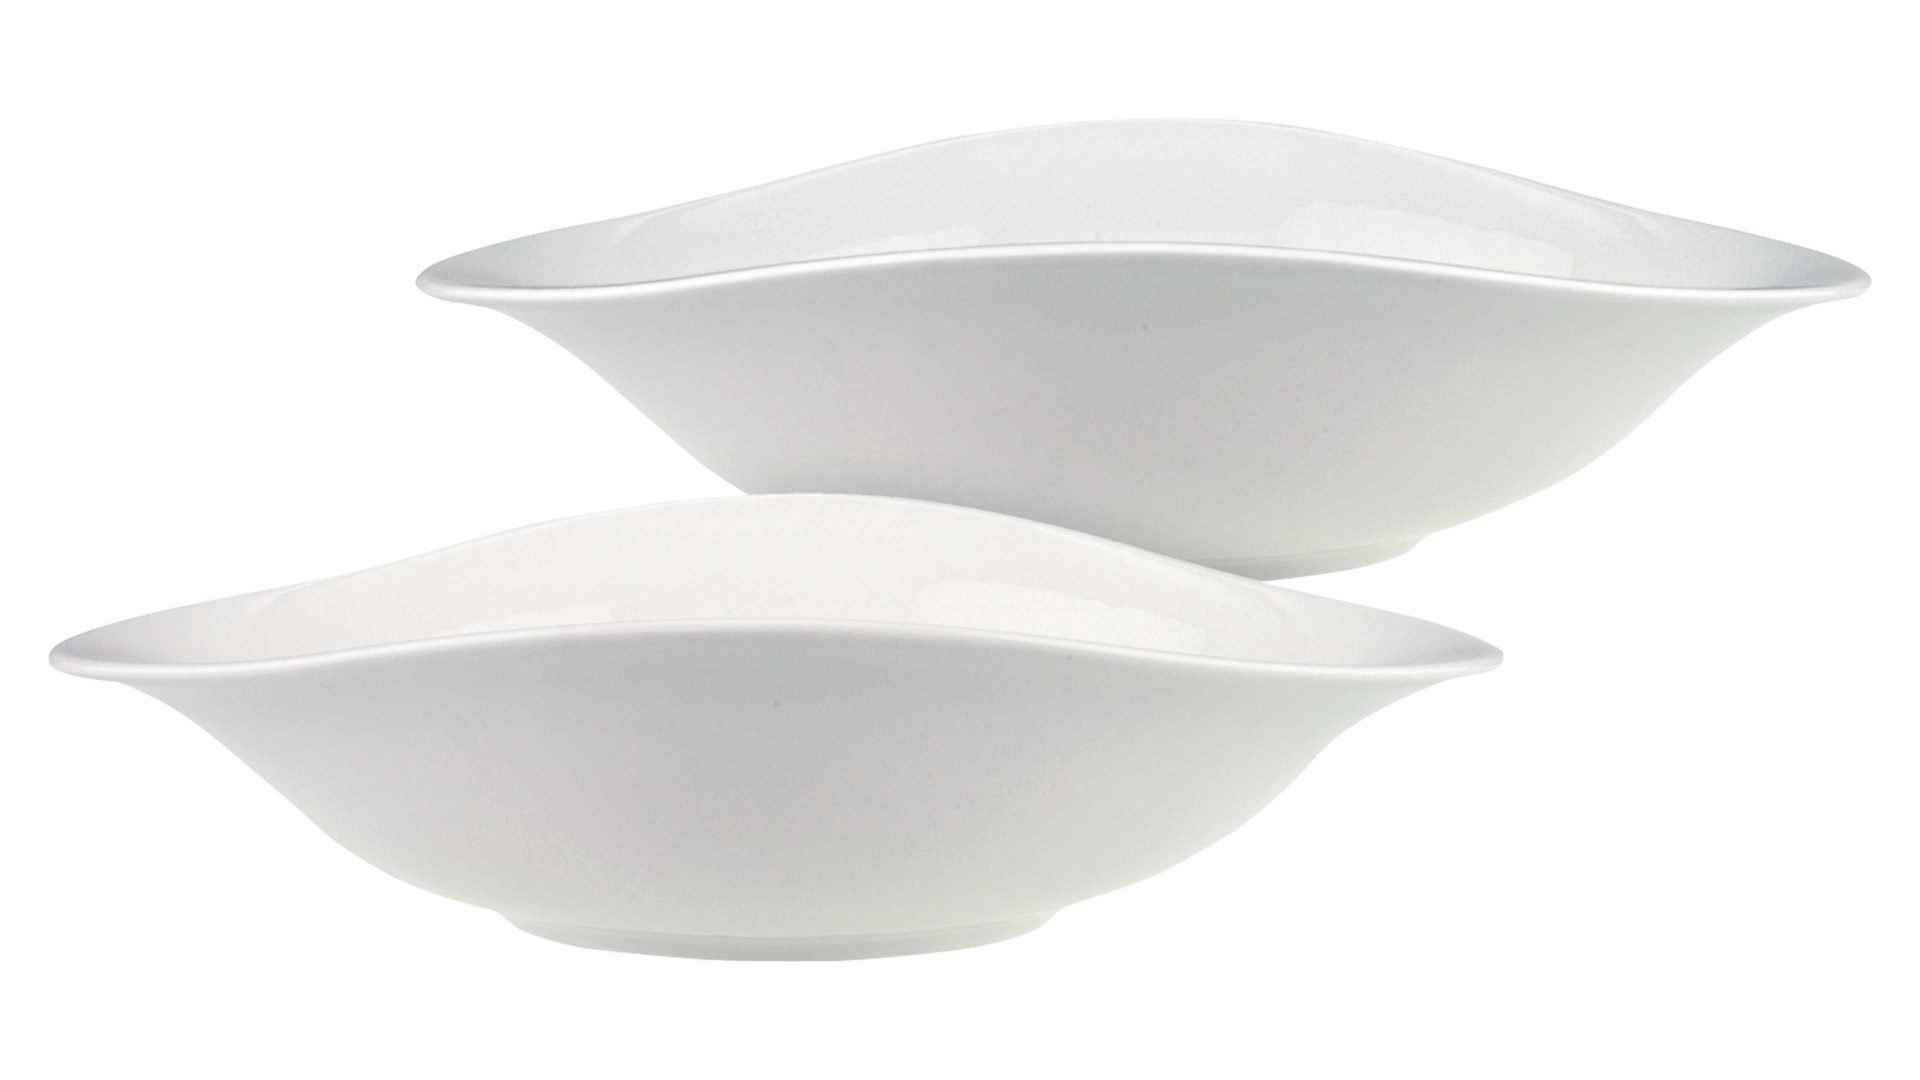 Teller Villeroy & boch aus Keramik in Weiß Villeroy & Boch Vapiano Pasta-Set weißes Premium-Porzellan - zweiteilig